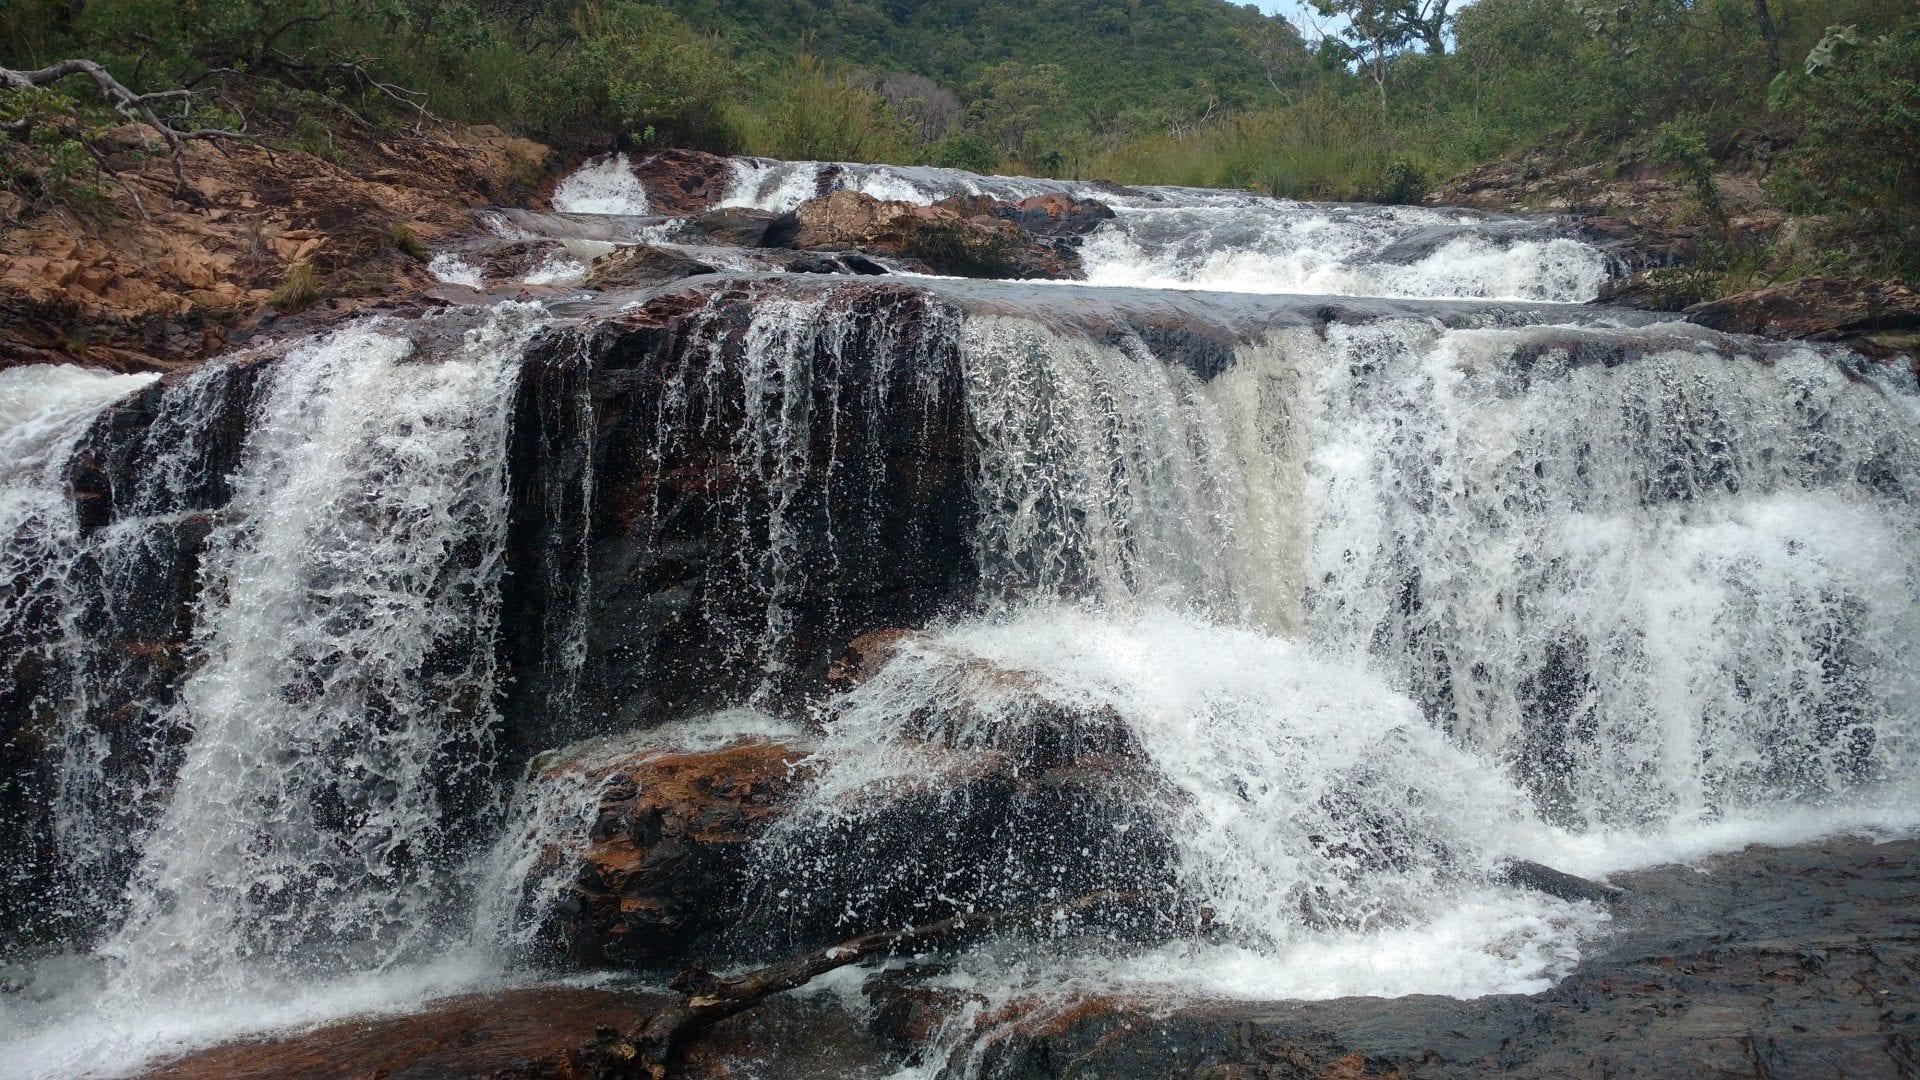 Cachoeiras perto de Brasília são verdadeiros paraísos naturais - Dia Online